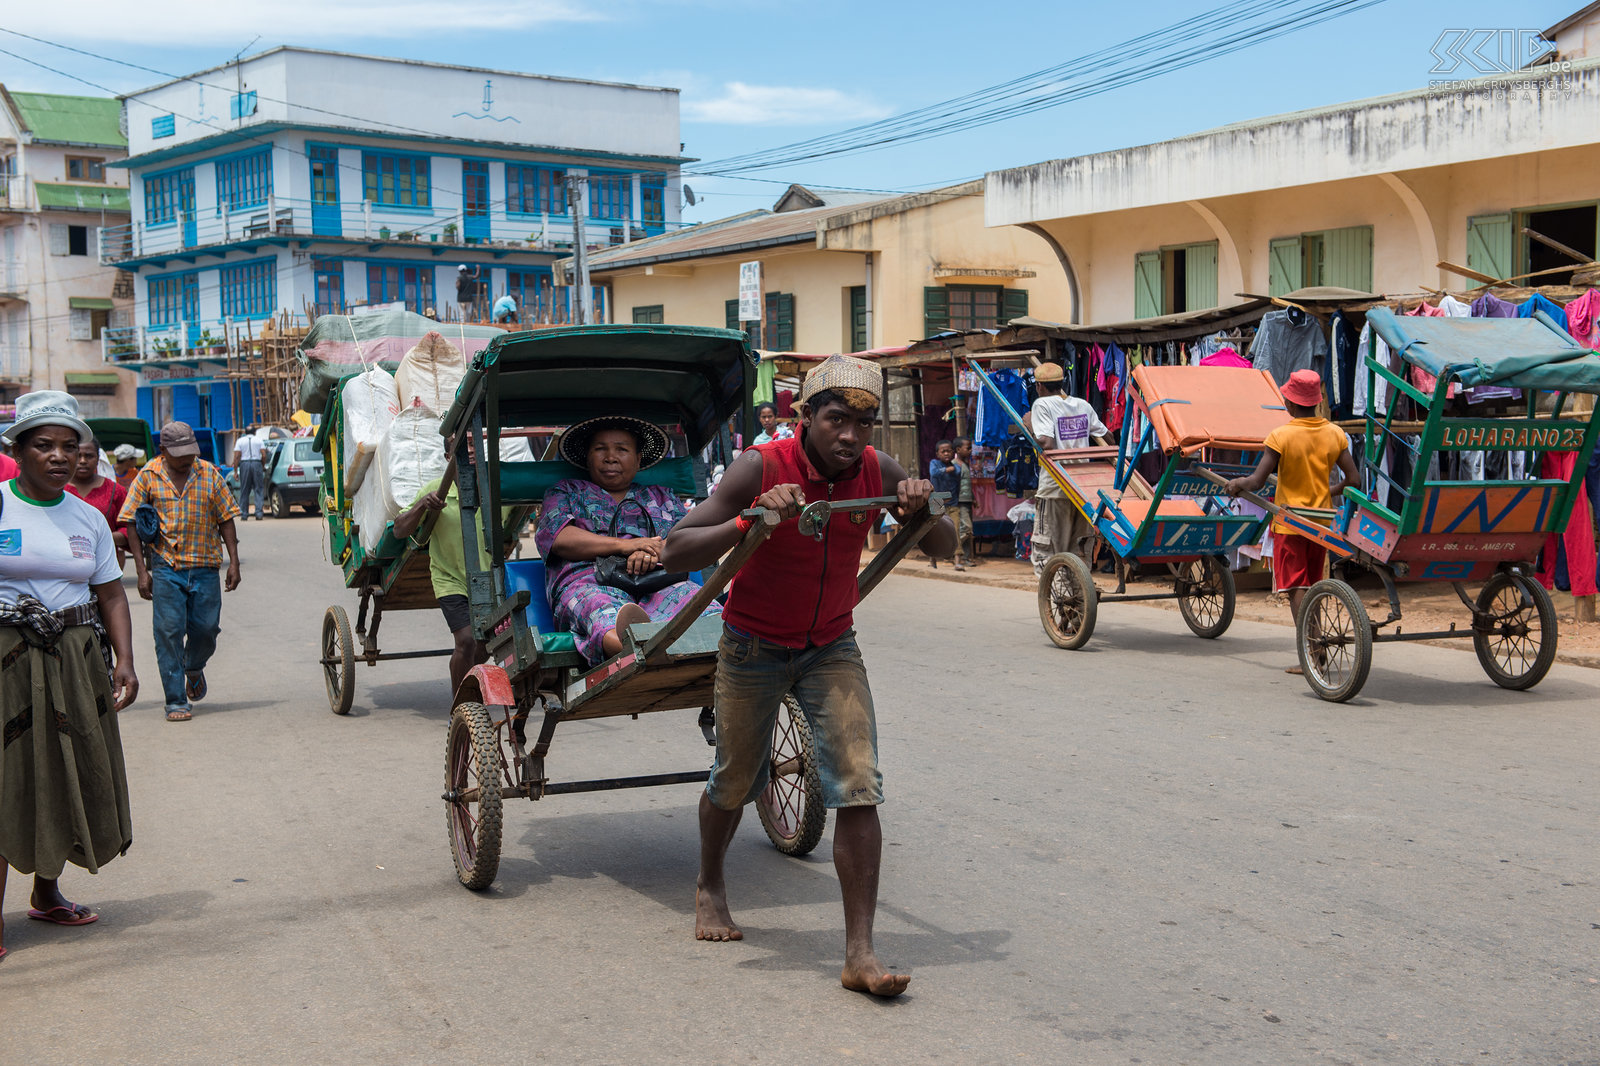 Ambositra - Pousse-pousse In veel steden in Madagaskar worden loop of fiets riksja's gebruikt voor lokaal vervoer. In de stad Ambositrais er nog steeds een hoge concentratie oude loopriksja’s of pousse-pousse zoals ze dit noemen in het Frans. Stefan Cruysberghs